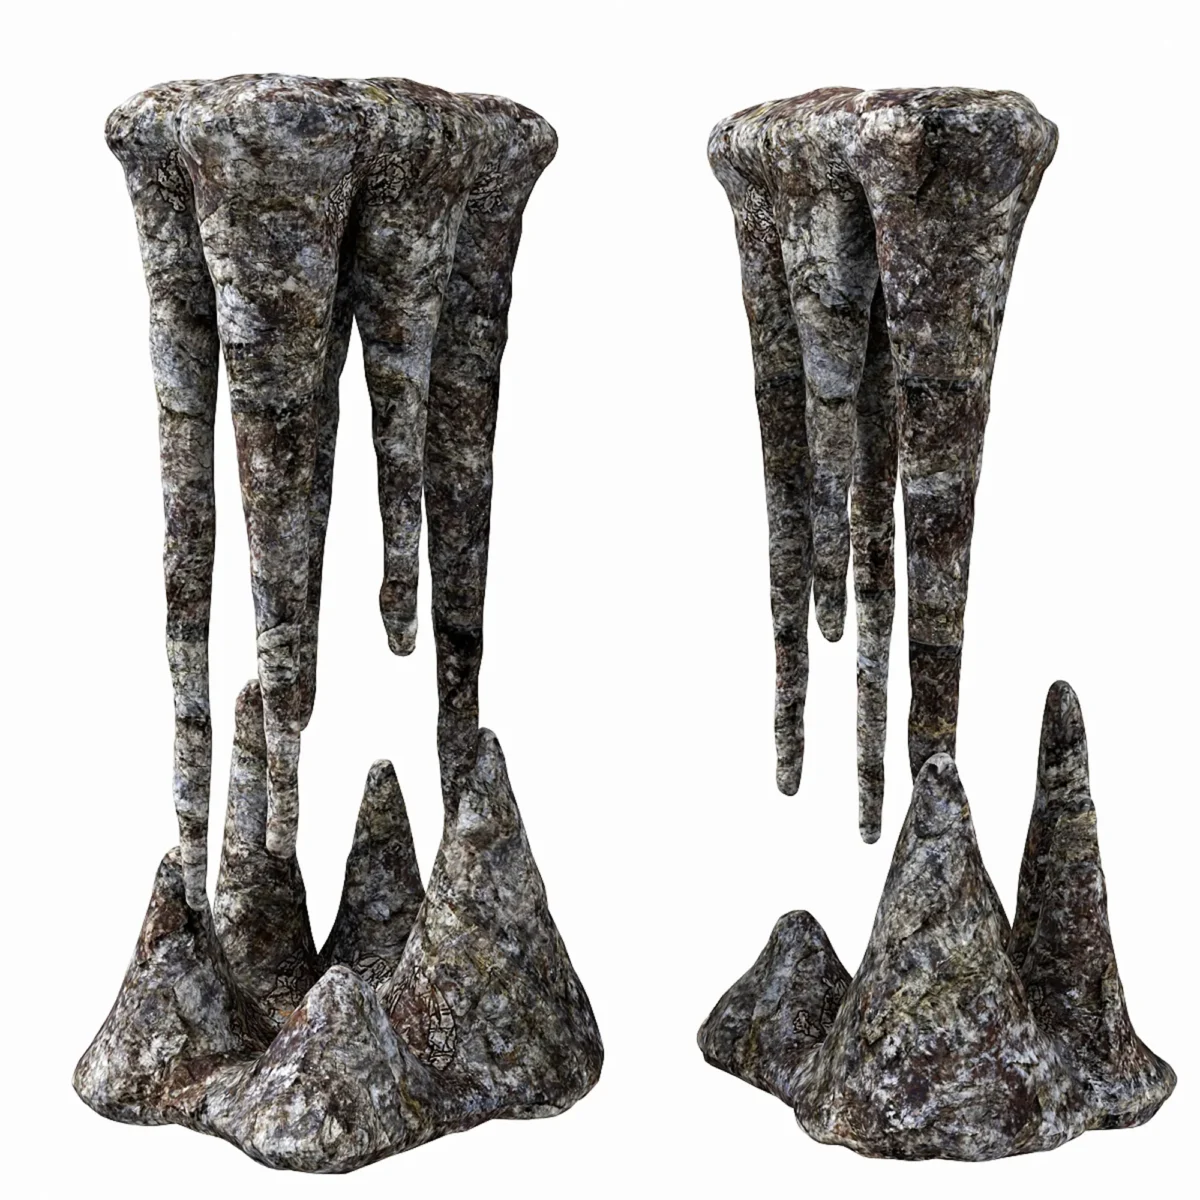 Пещерный камень N1 3D модель скачать на ru.cg.market, 3ds max, V-Ray